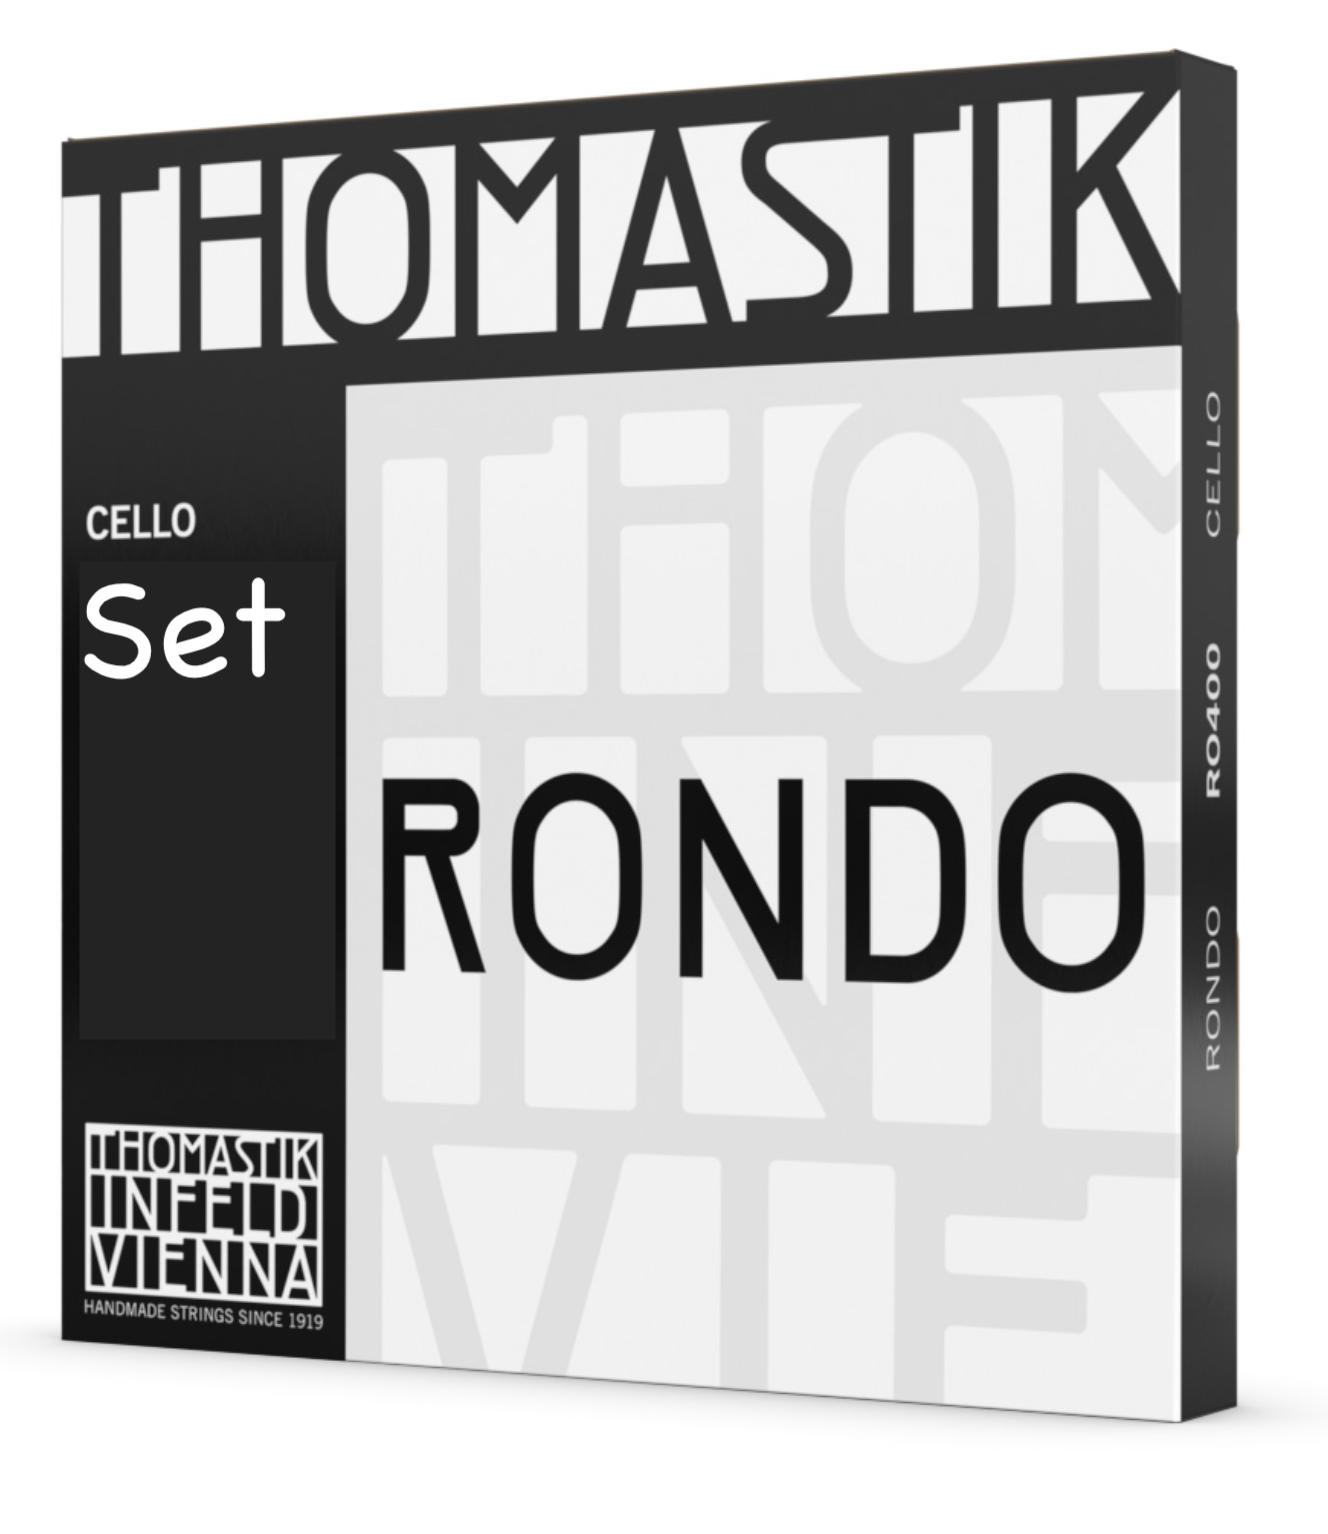 Thomastik-Infeld Rondo cello string set by Thomastik-Infeld, straight